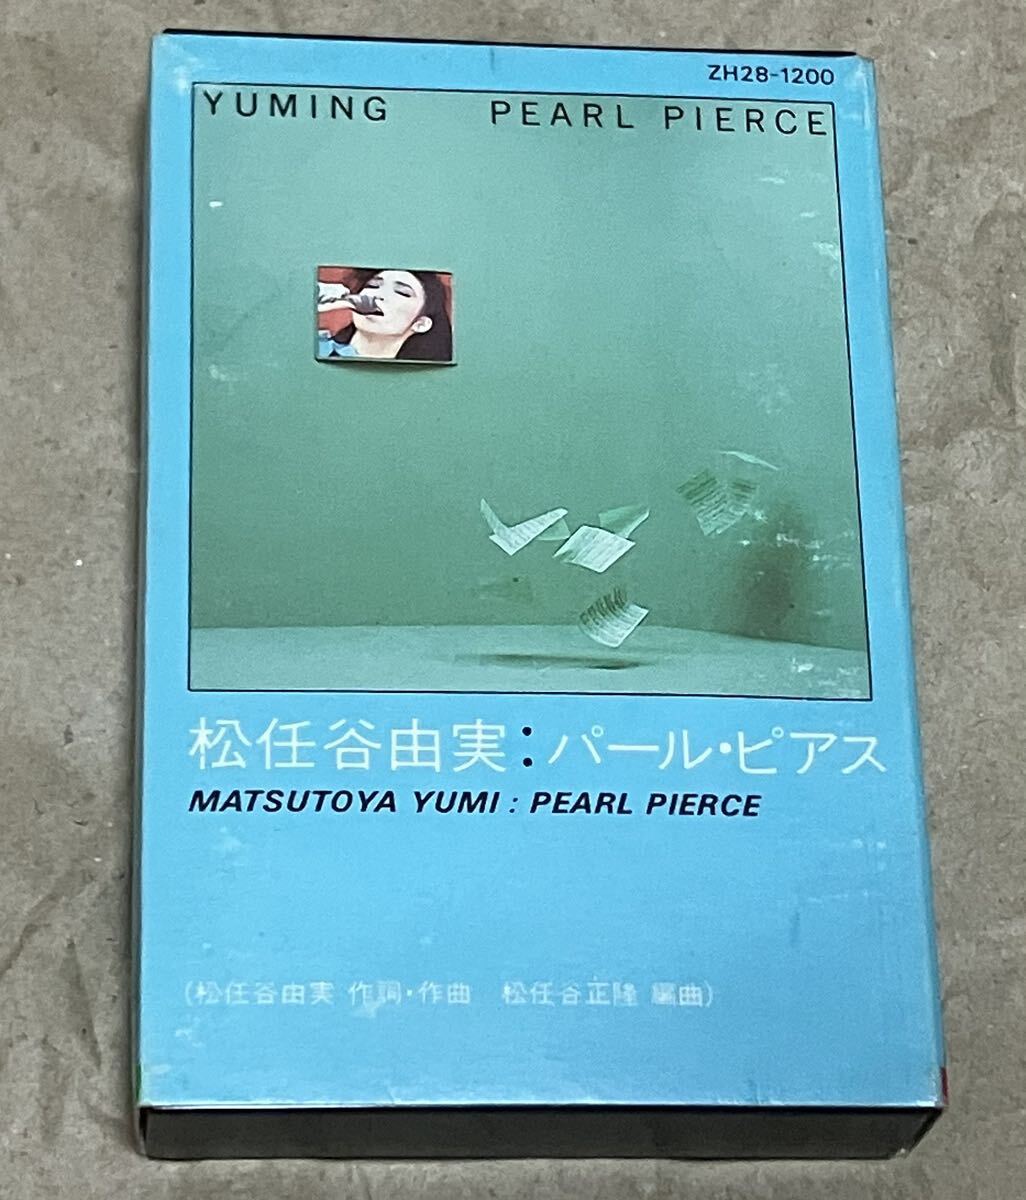 【カセットテープ】歌詞カードあり / 松任谷由実 パール・ピアス ZH28-1200 YUMI MATSUTOYA Pearl Pierce YUMING 希少品の画像1